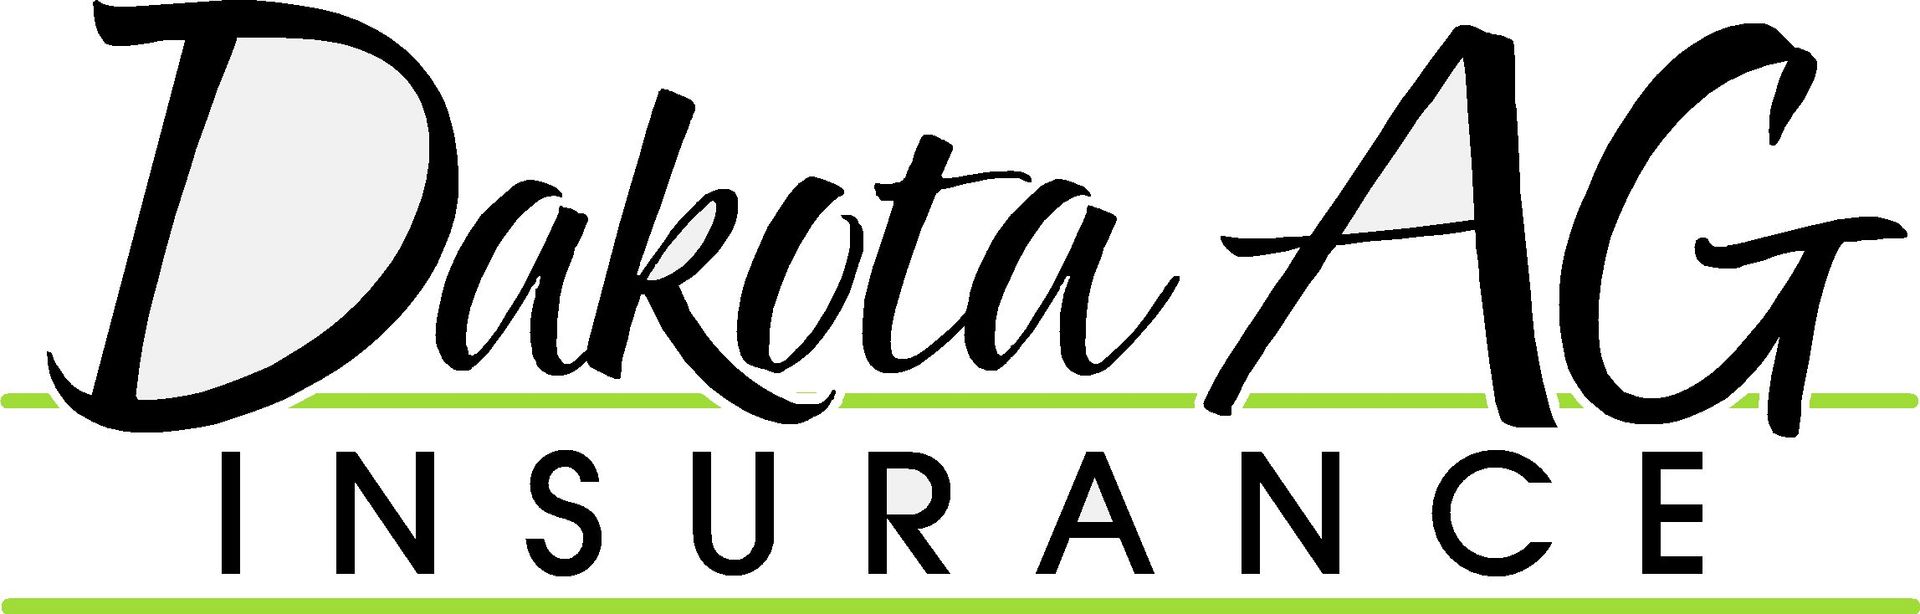 Dakota Ag Insurance - logo